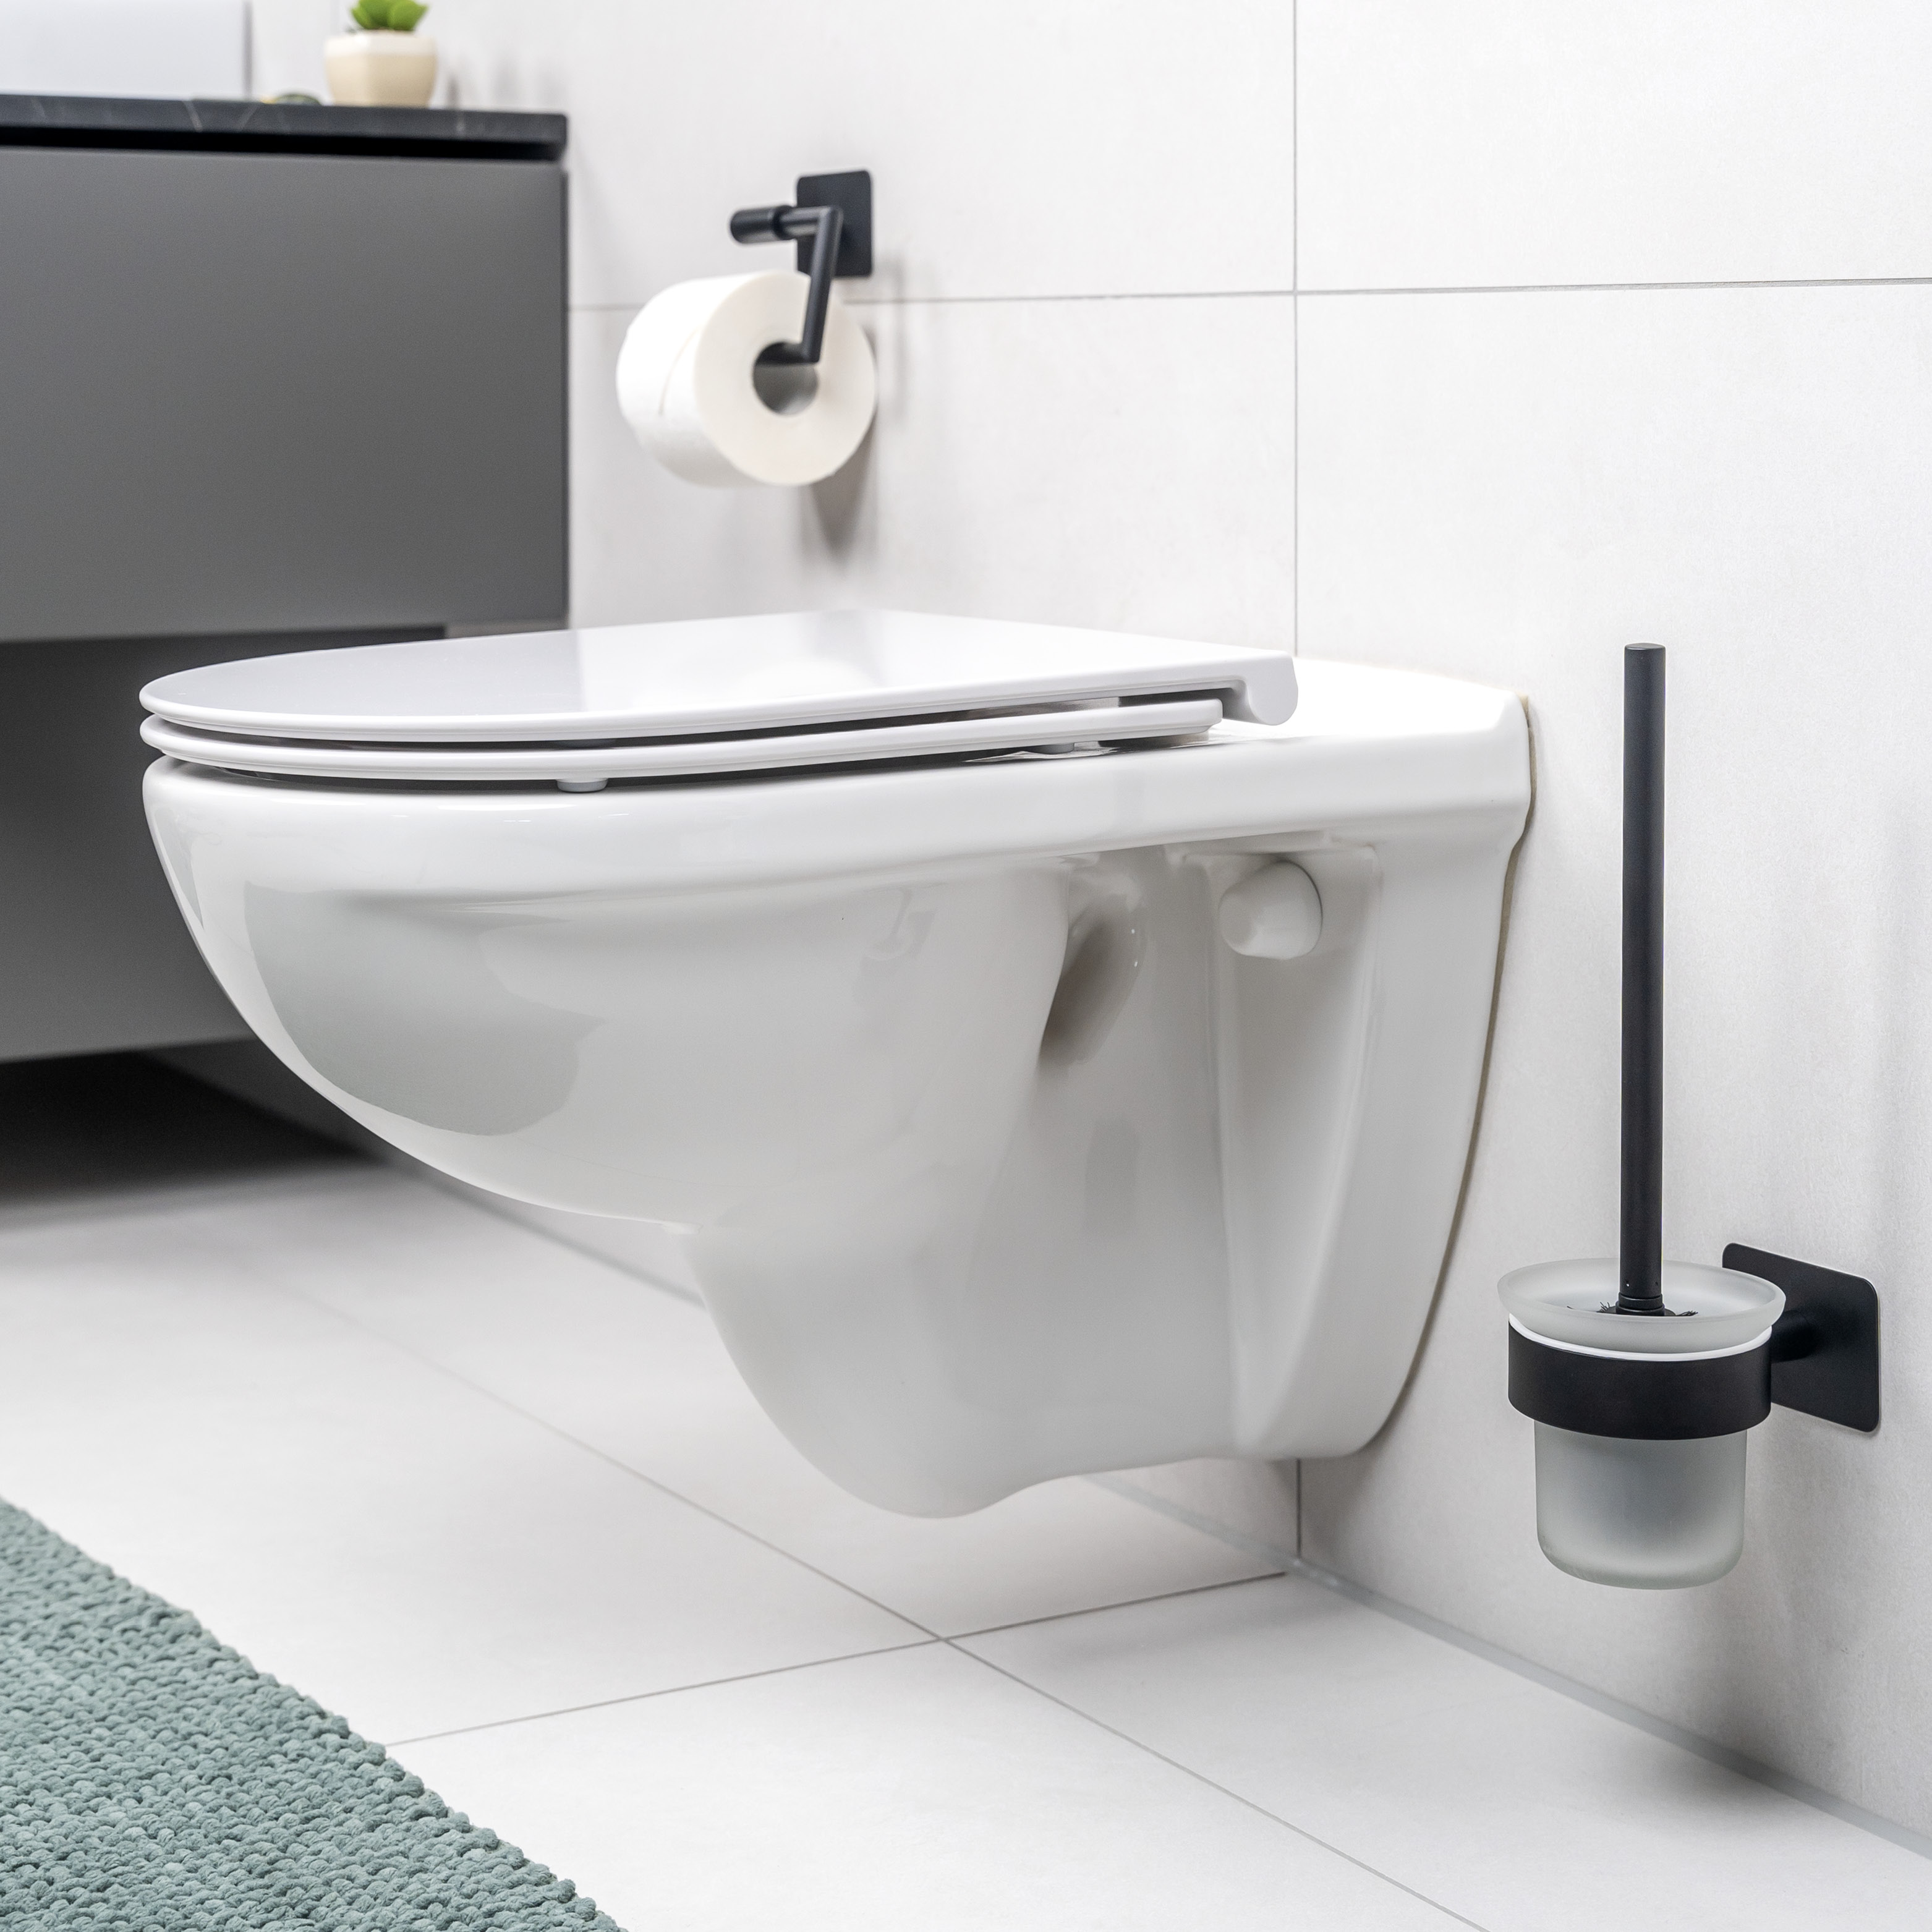 Bad-Serie PIAZZA BLACK TAPE - WC-Garnitur selbstklebend Glas & Edelstahl, schwarz - kein Bohren 3M Klebebefestigung